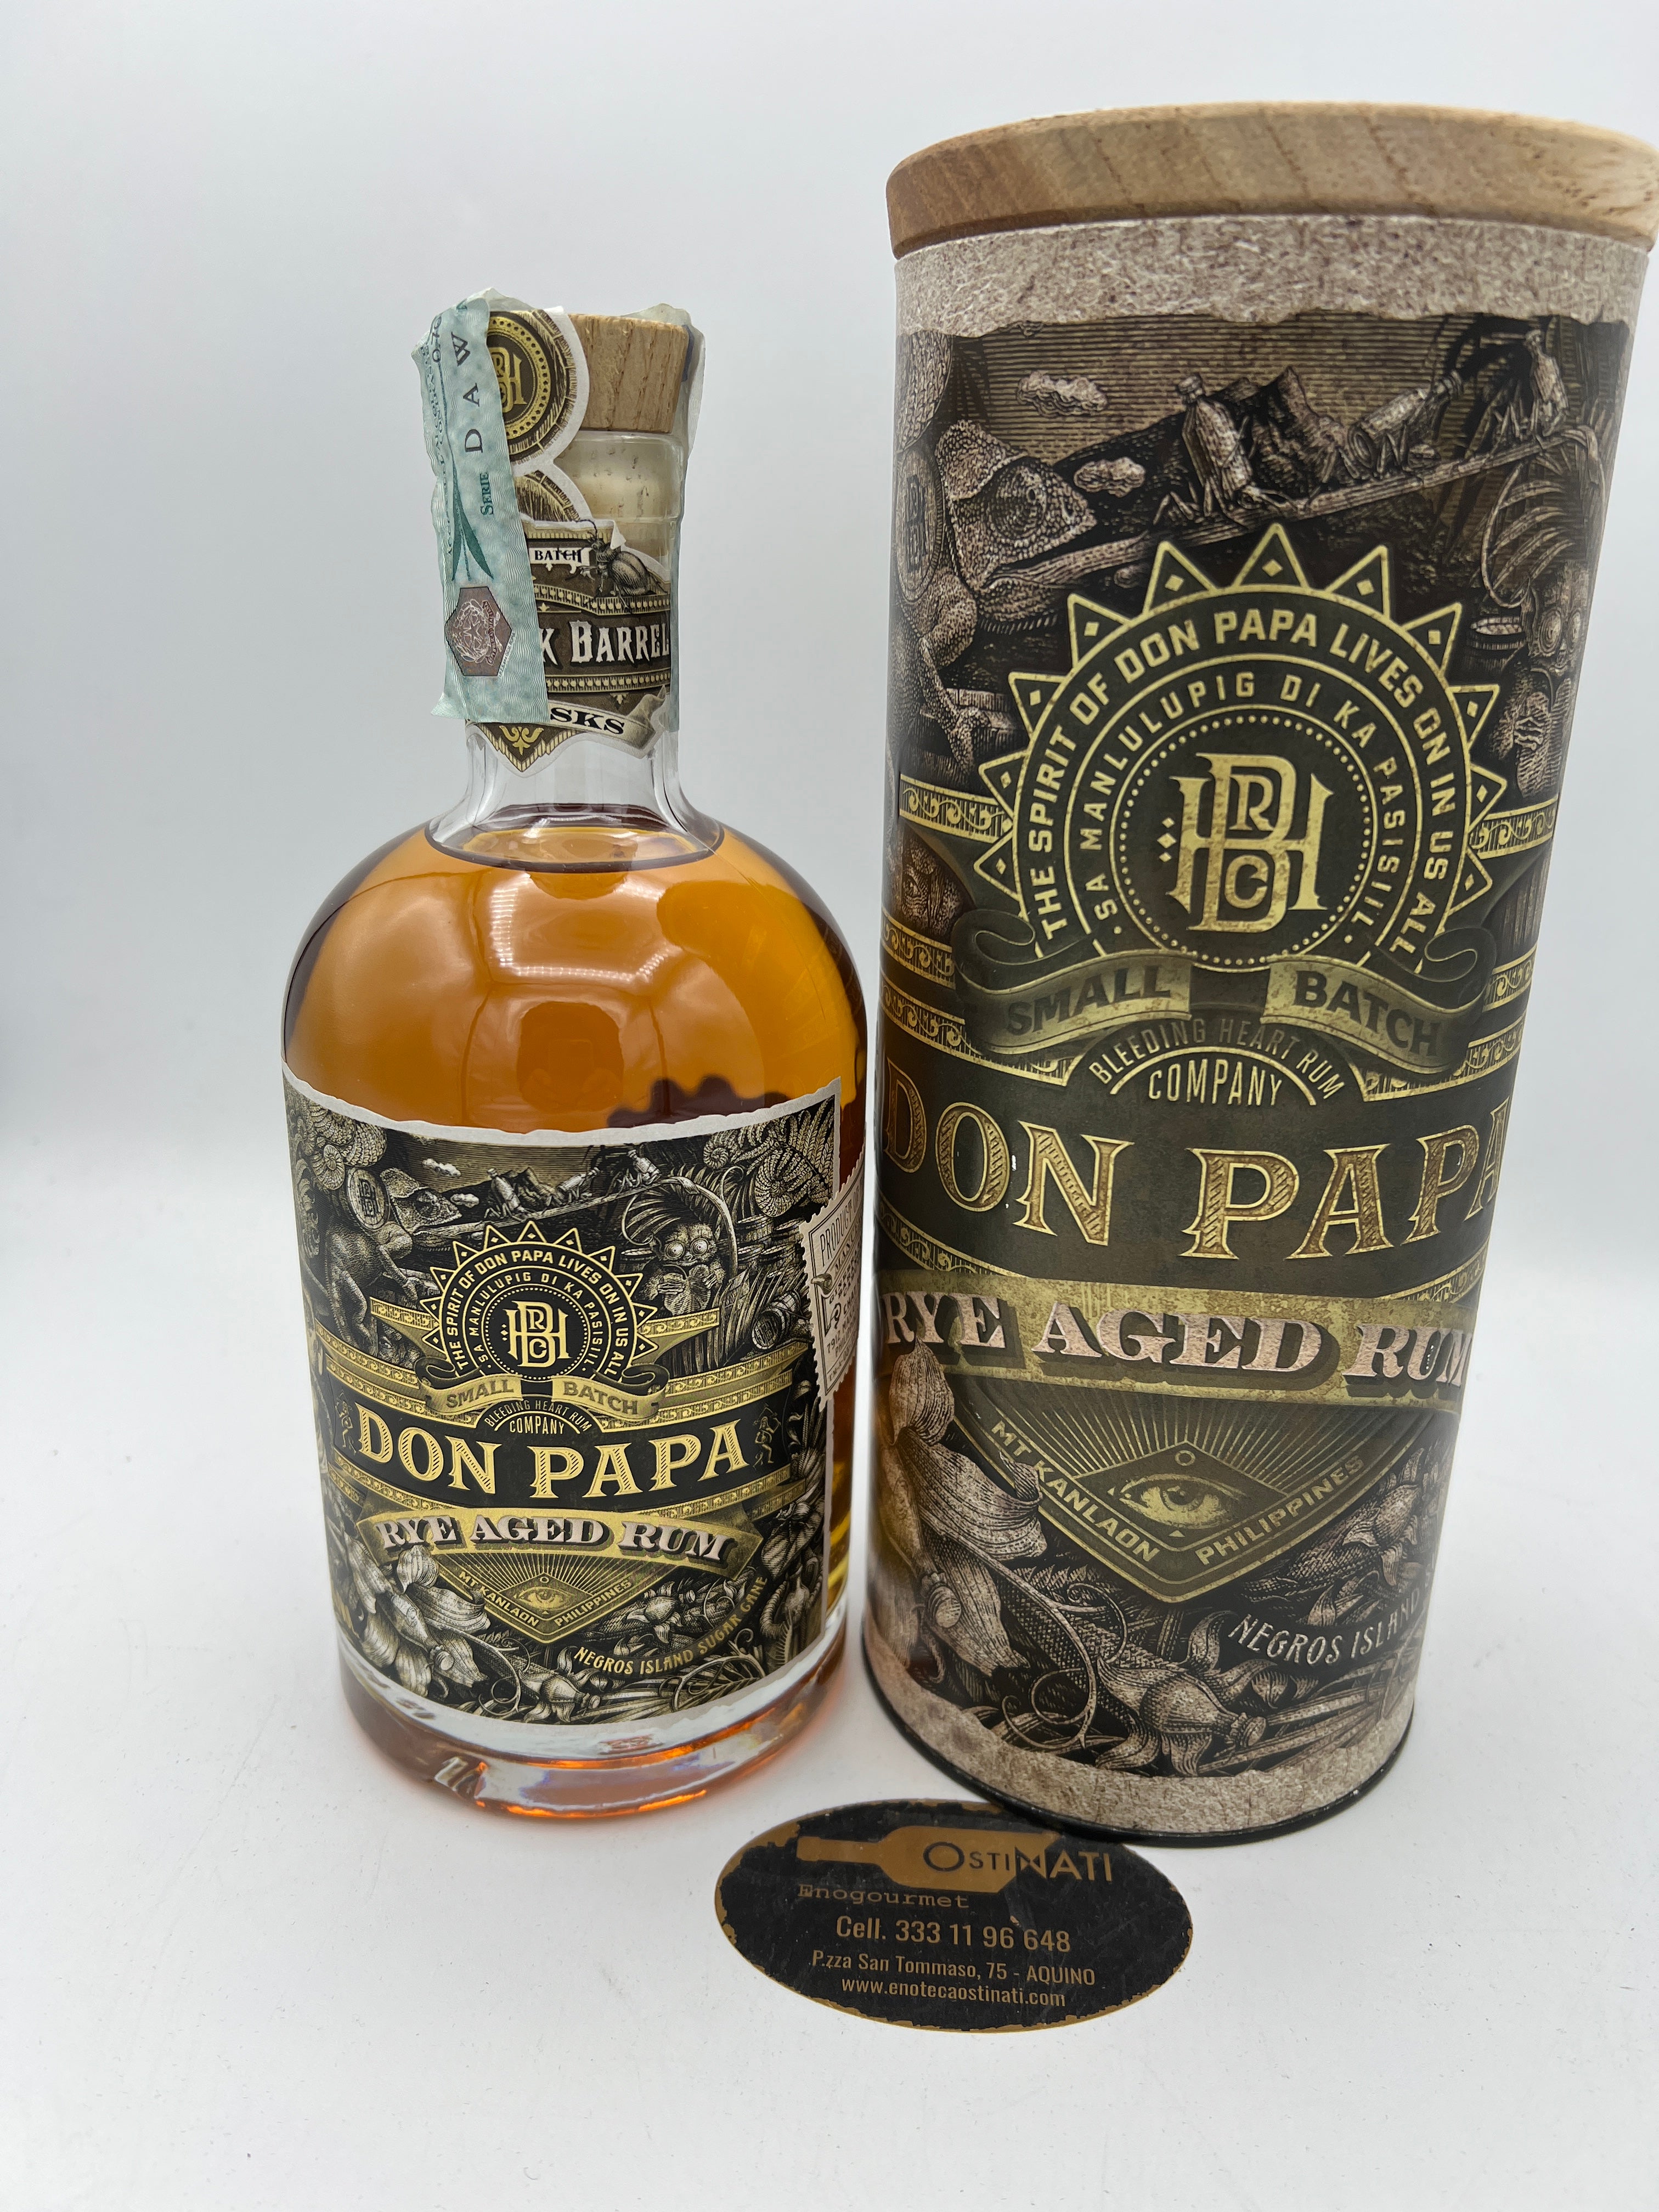 Don Papa Rye Aged Rum Rum - Babo Wine - Vendita di vini, distillati, birre  e molto altro